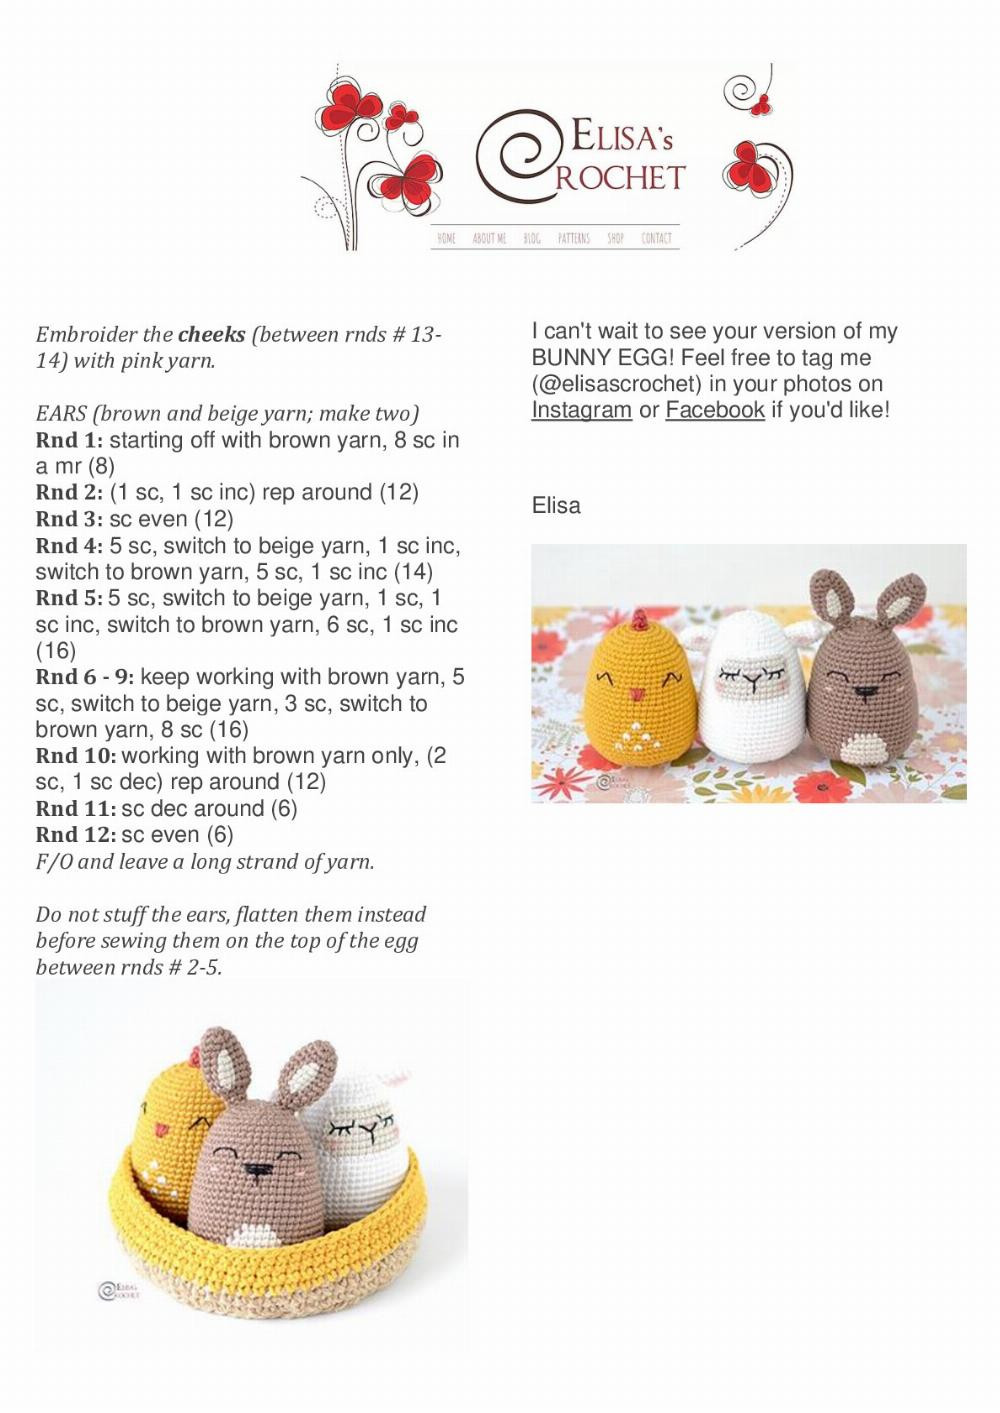 Easter Egg Bunny 2021 crochet pattern